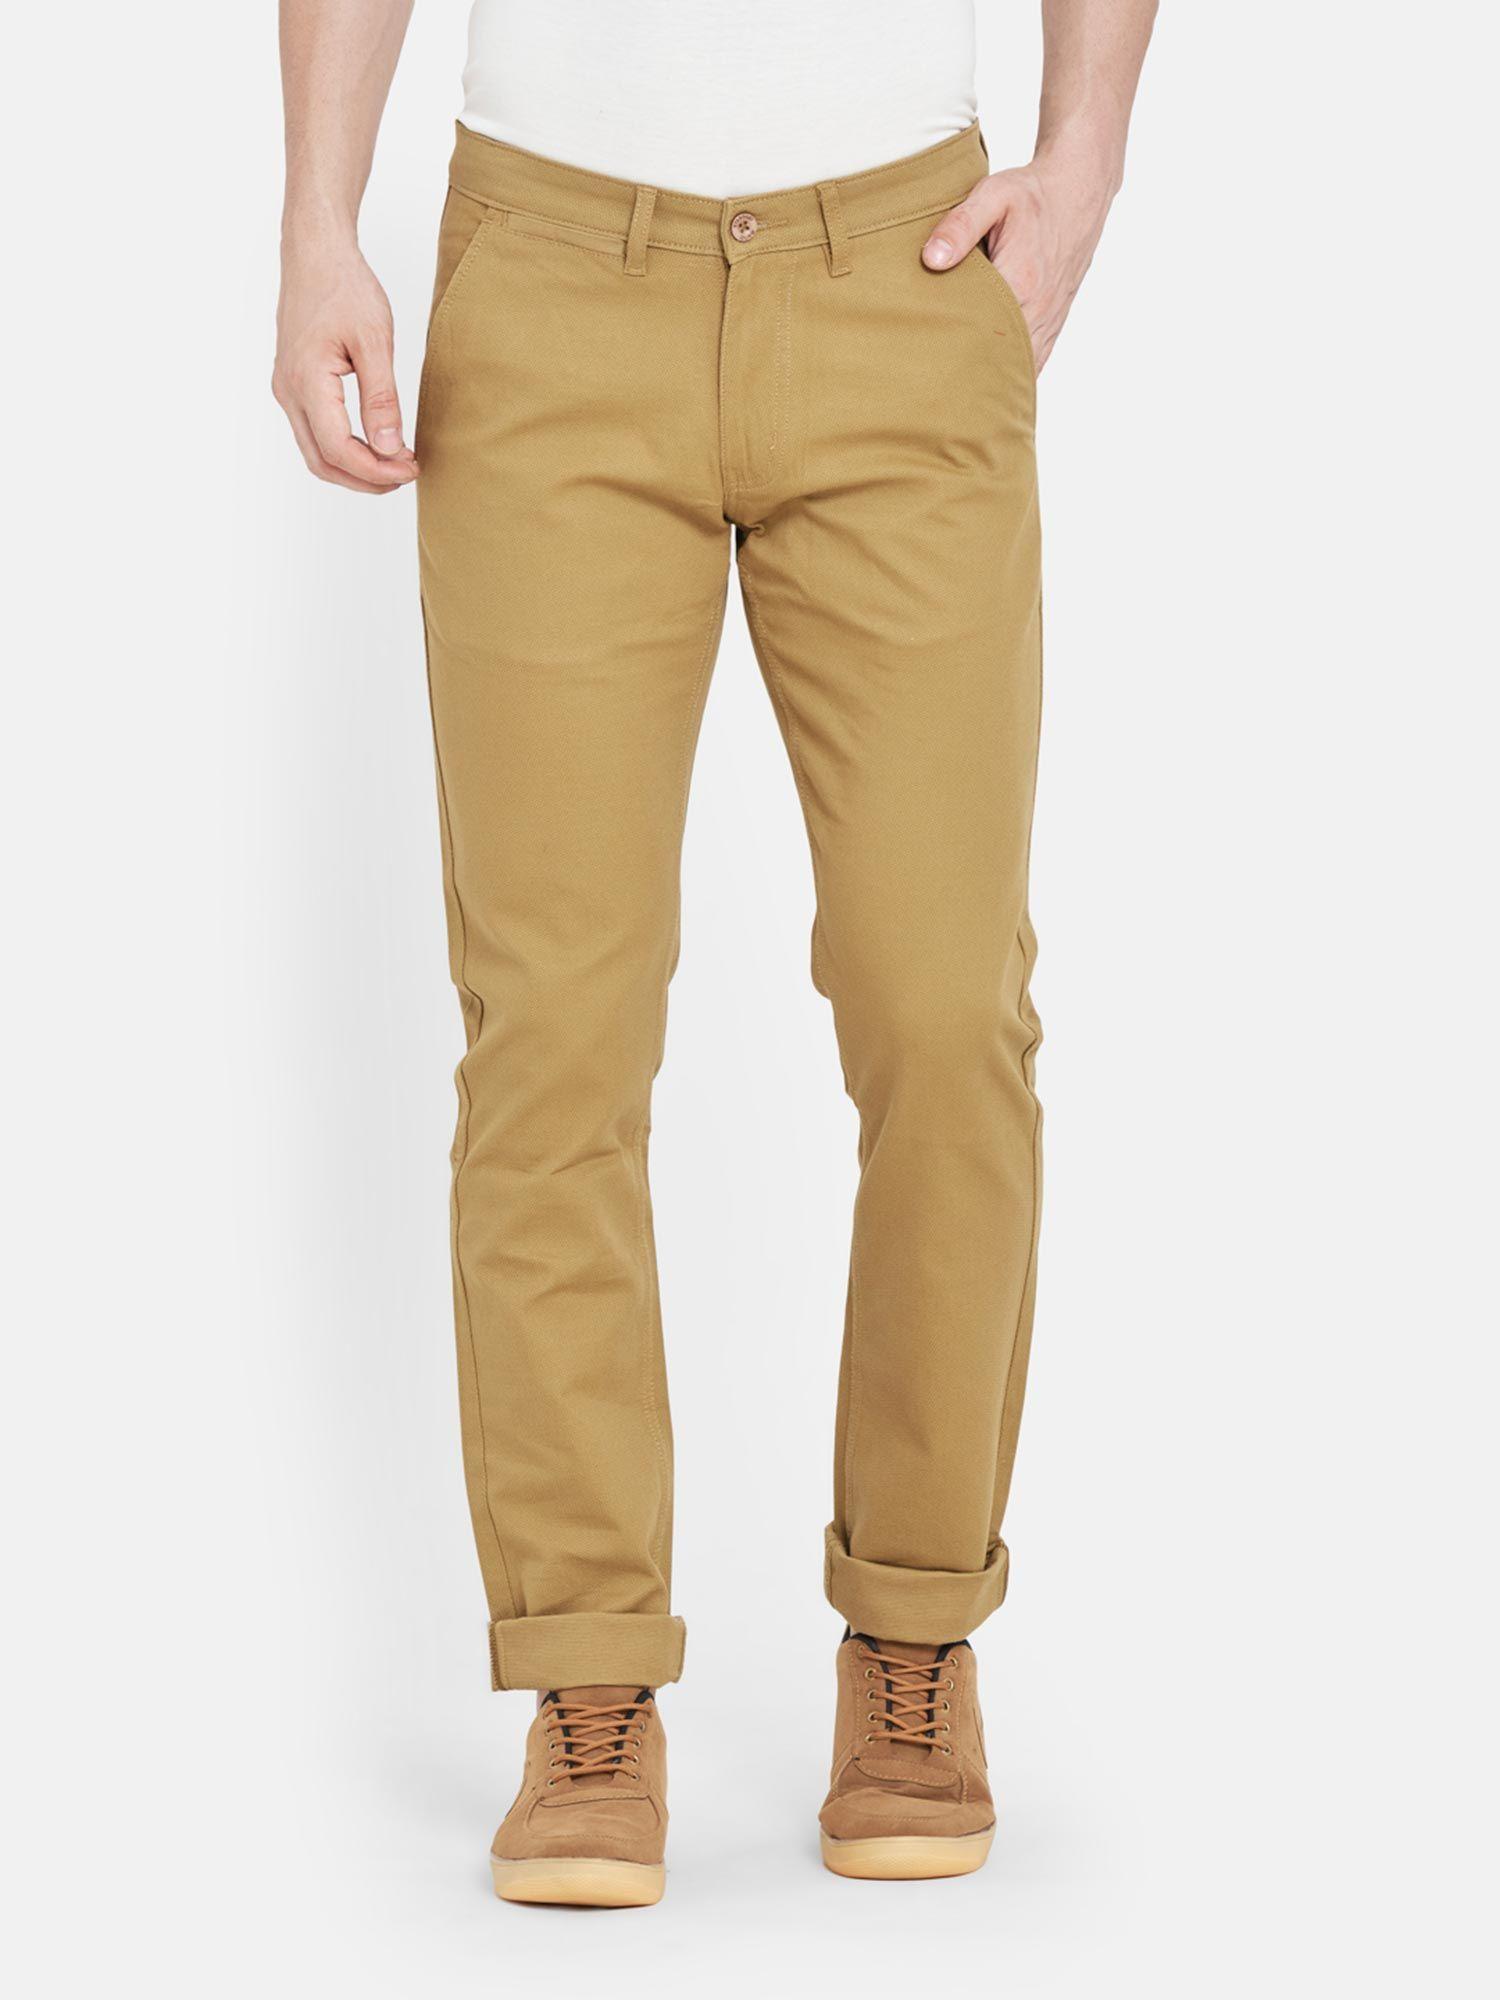 men's cotton slim fit khaki trousers